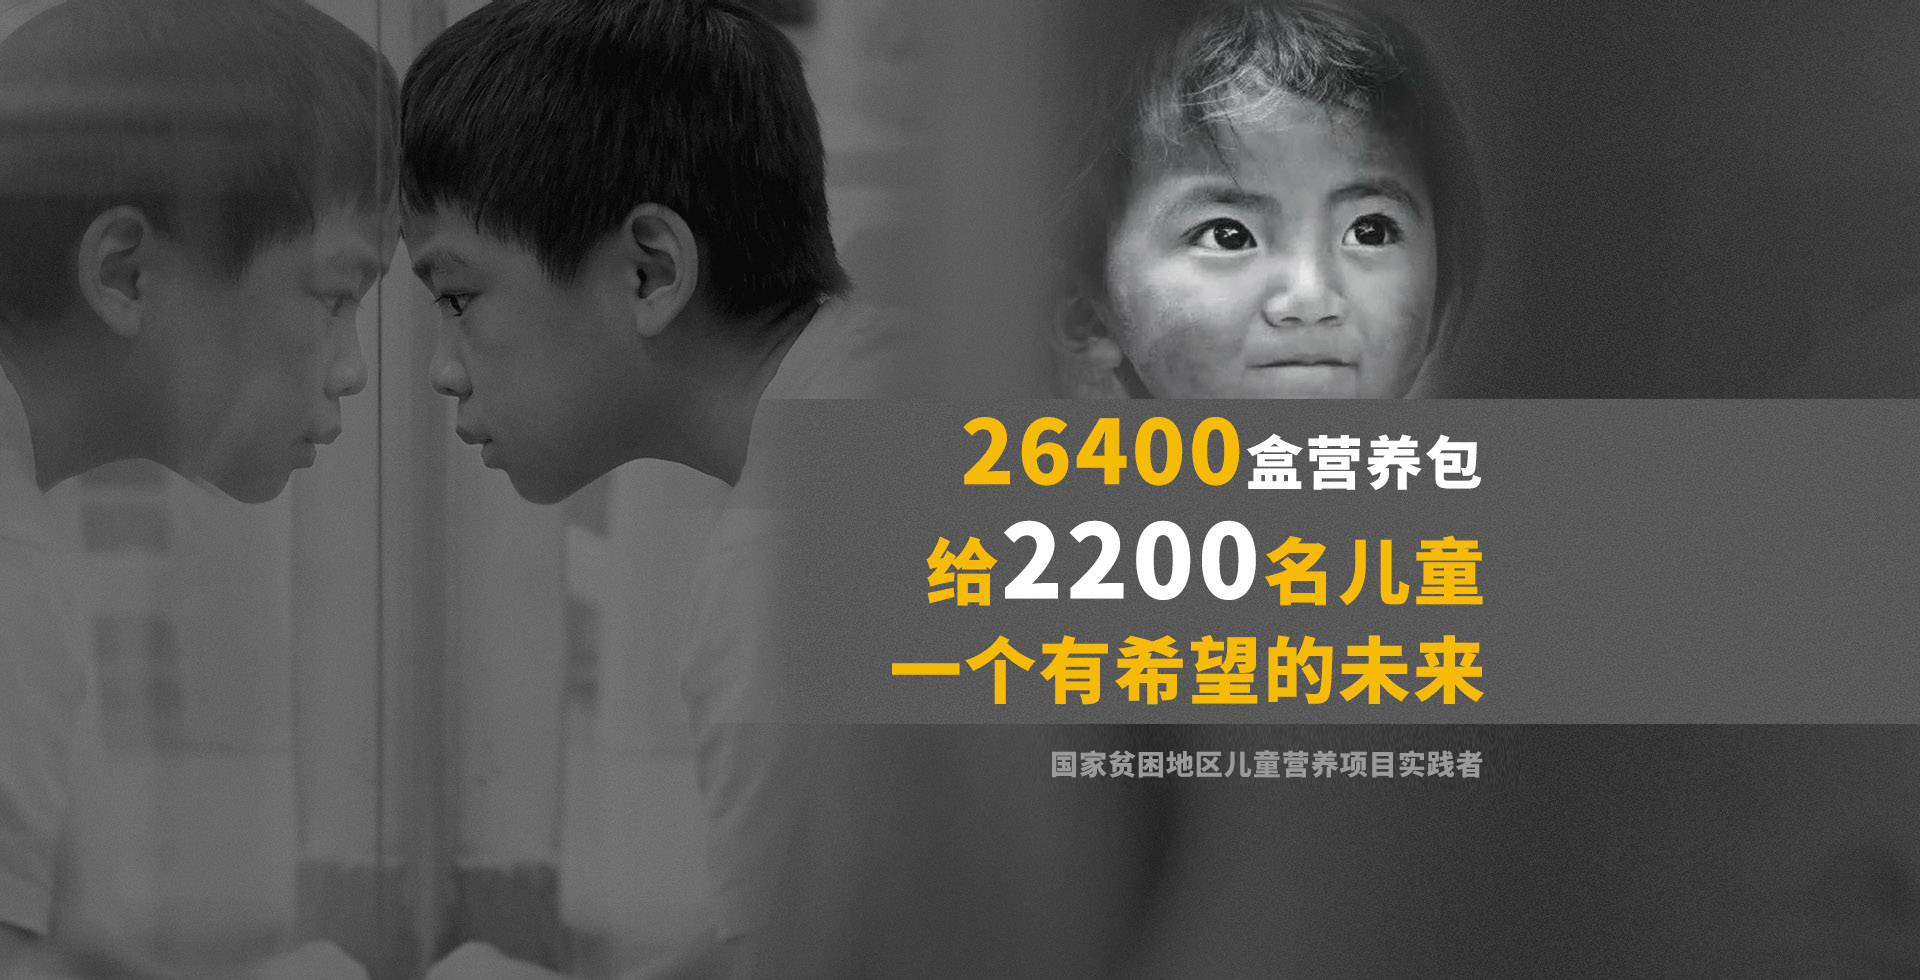 26400盒营养包，给2200名儿童一个有希望的未来